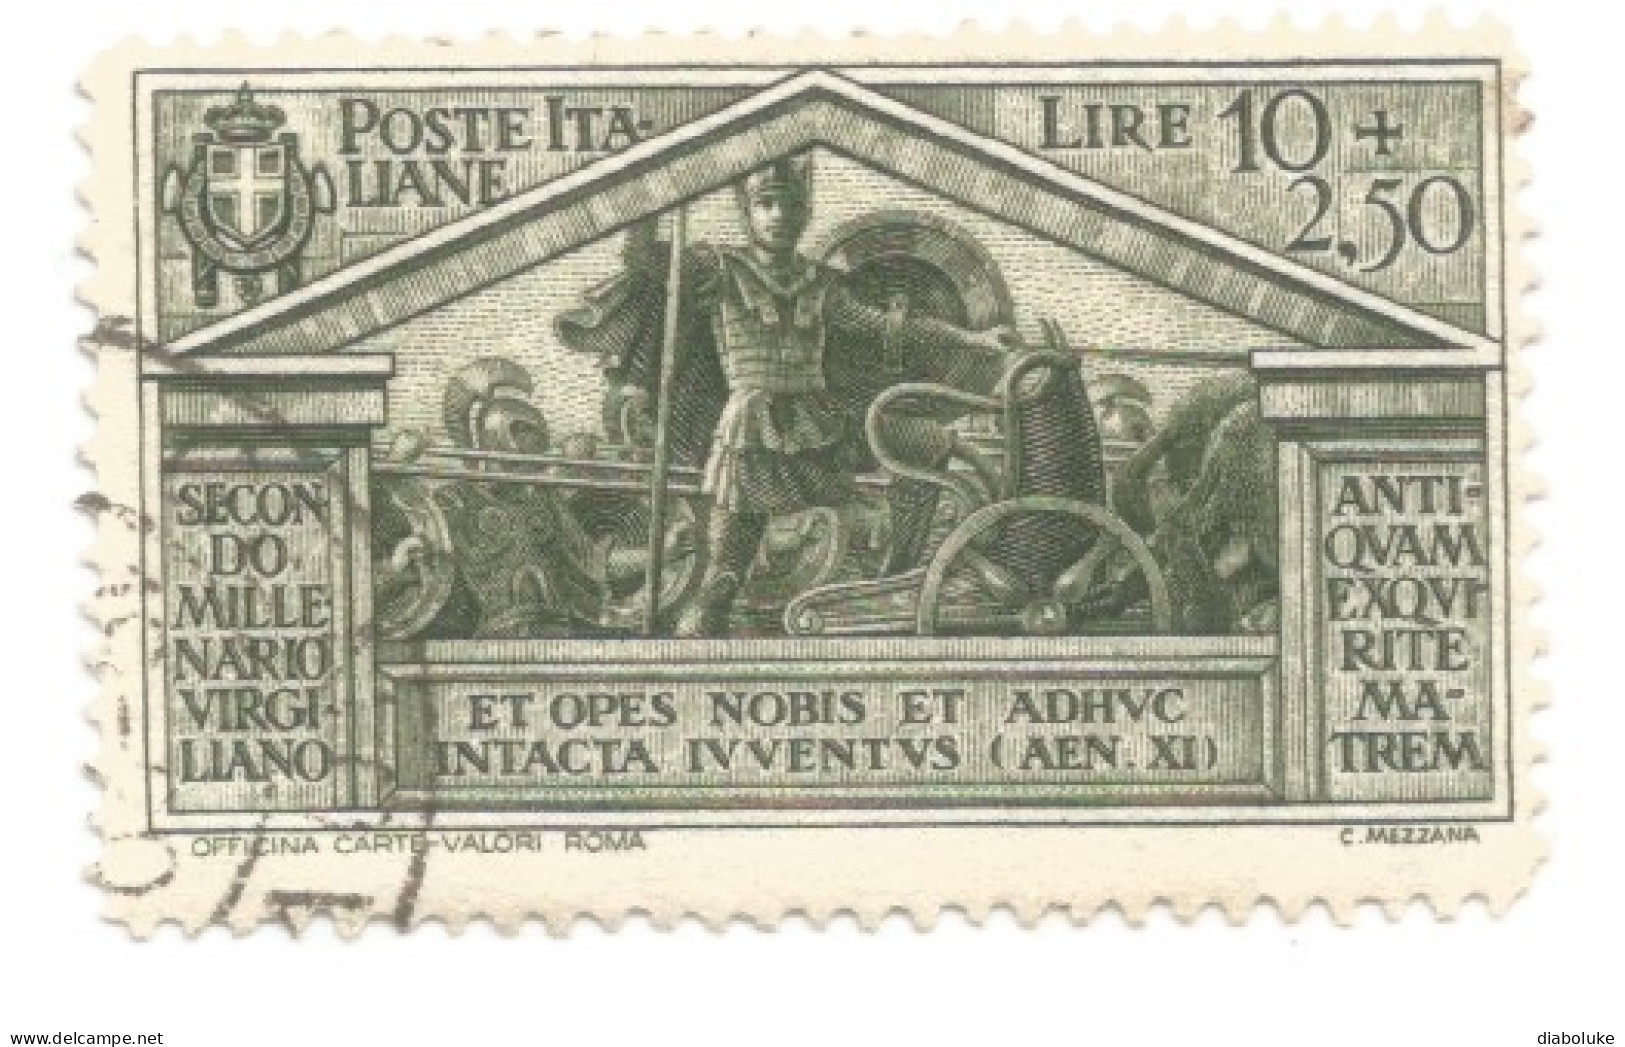 (REGNO D'ITALIA) 1934, NASCITA DI VIRGILIO - Serie di 9 francobolli usati, annulli da periziare